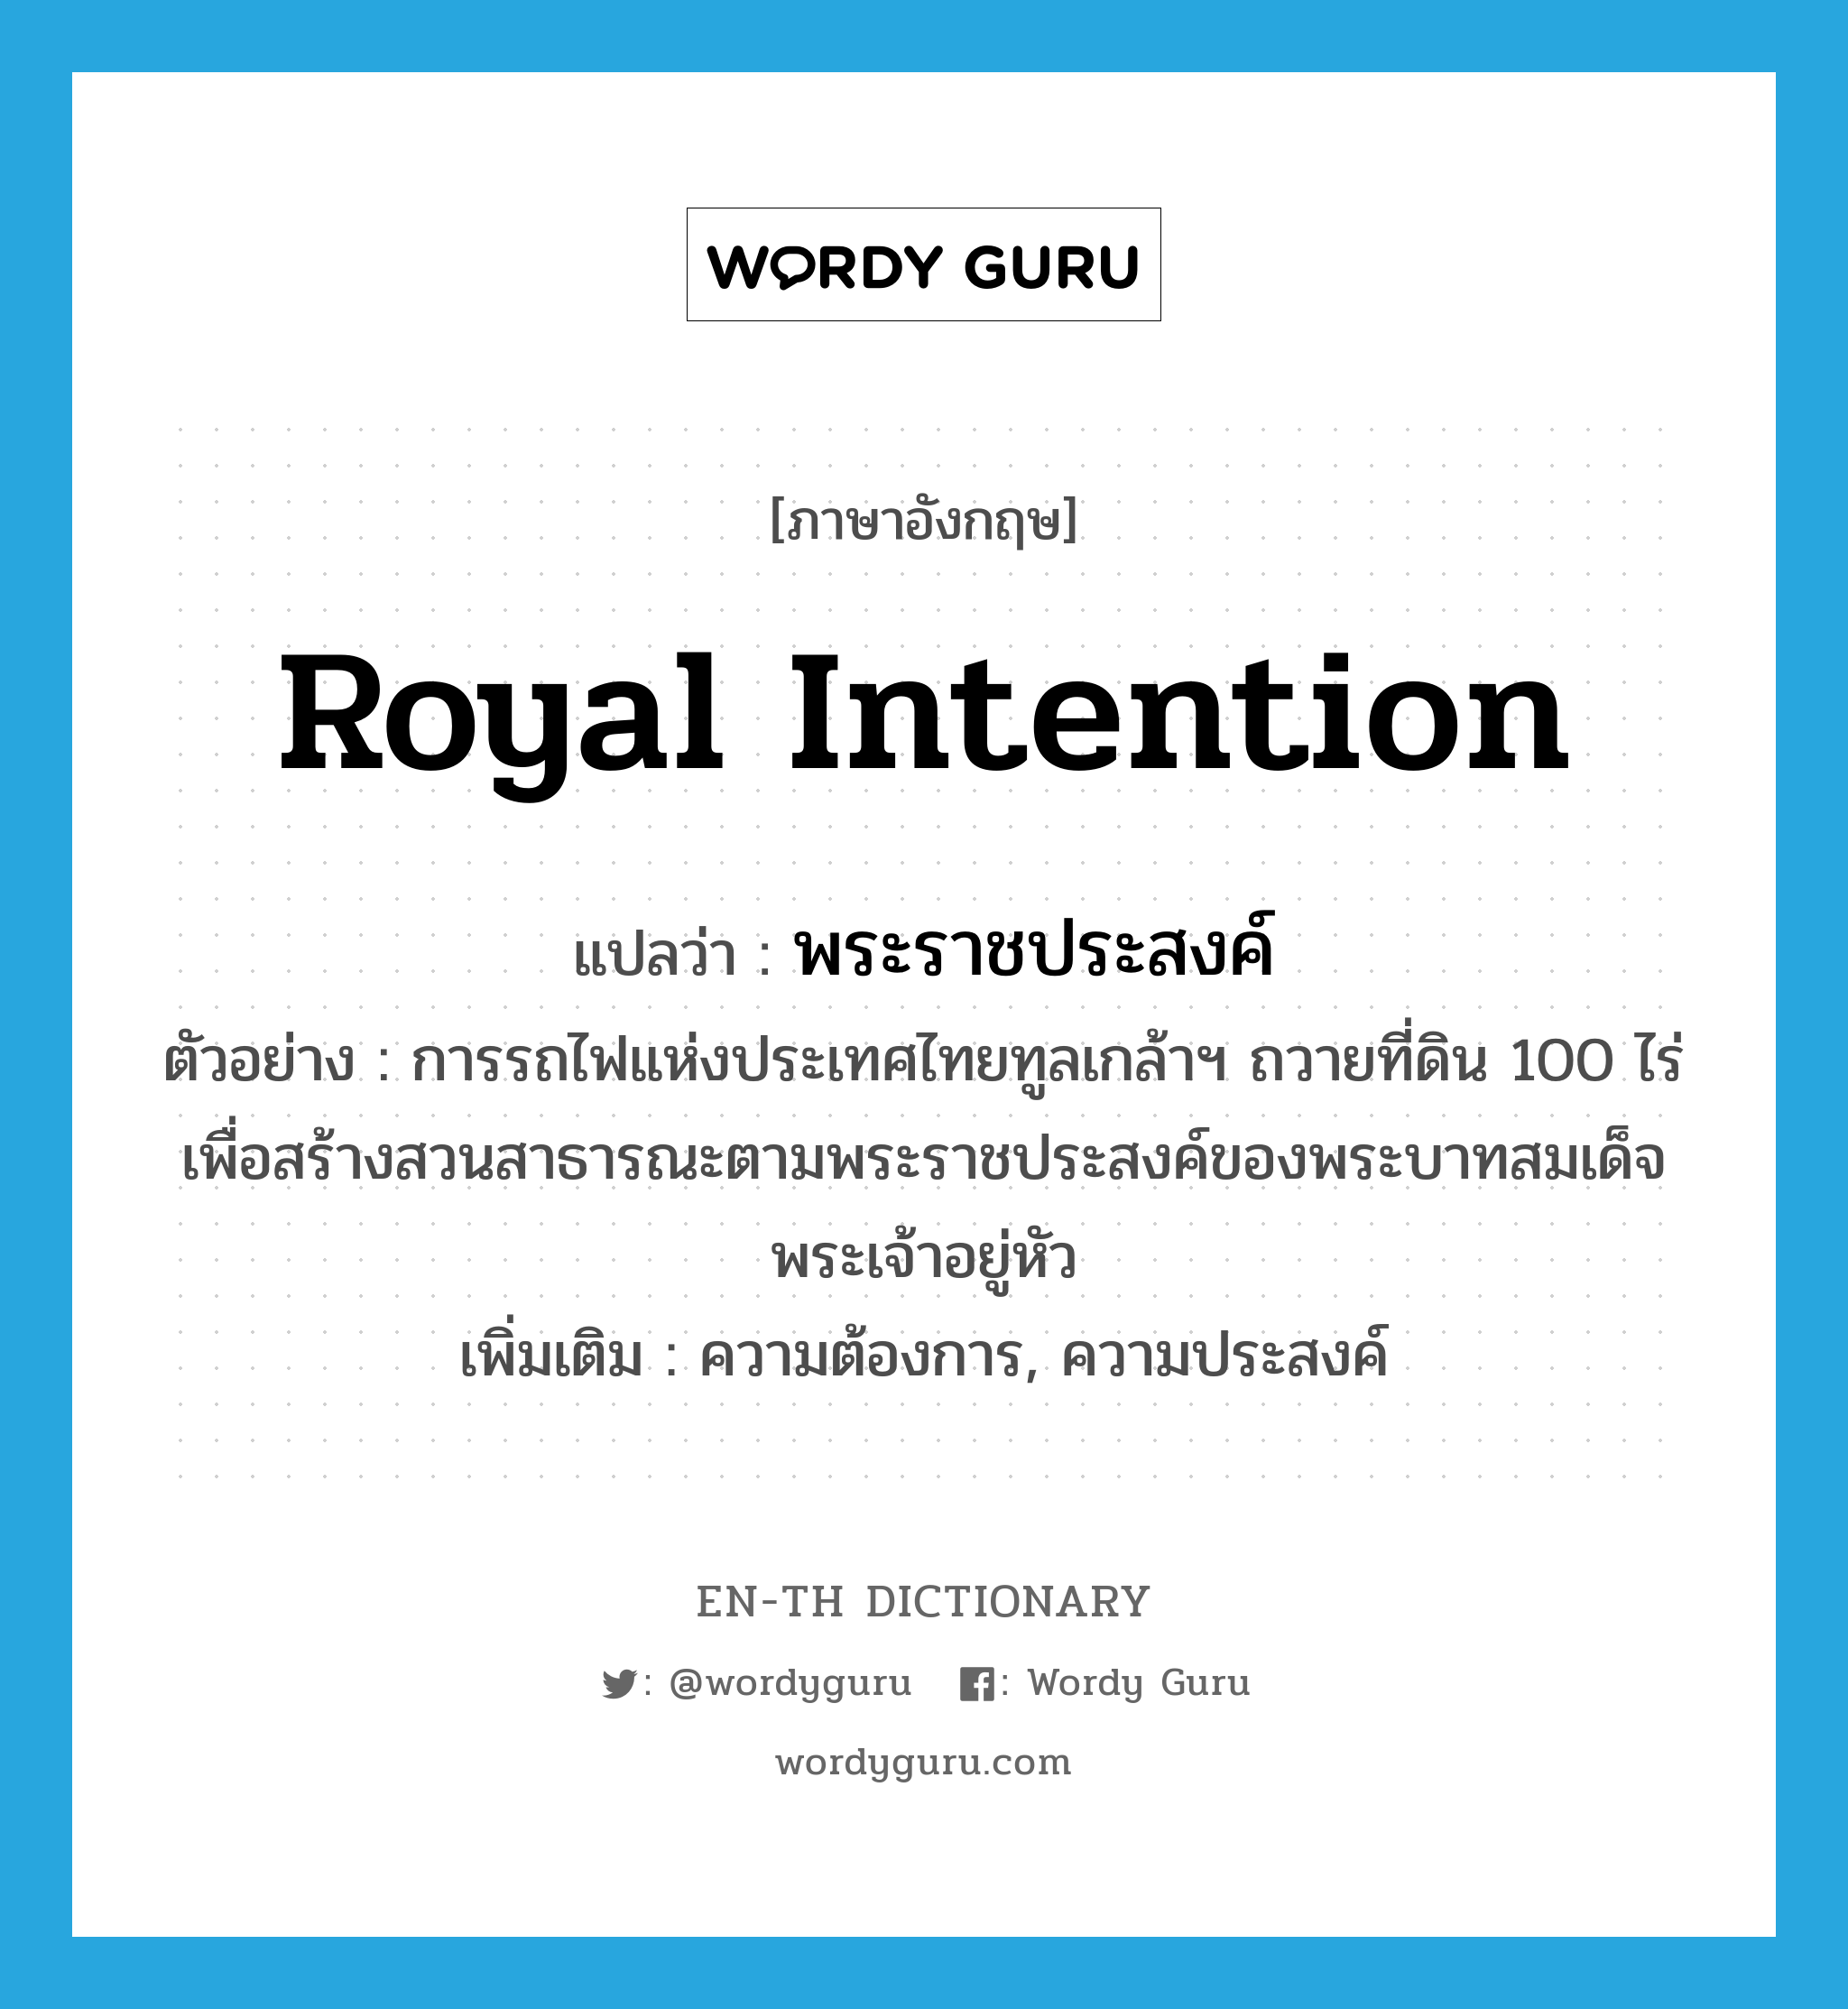 royal intention แปลว่า?, คำศัพท์ภาษาอังกฤษ royal intention แปลว่า พระราชประสงค์ ประเภท N ตัวอย่าง การรถไฟแห่งประเทศไทยทูลเกล้าฯ ถวายที่ดิน 100 ไร่ เพื่อสร้างสวนสาธารณะตามพระราชประสงค์ของพระบาทสมเด็จพระเจ้าอยู่หัว เพิ่มเติม ความต้องการ, ความประสงค์ หมวด N